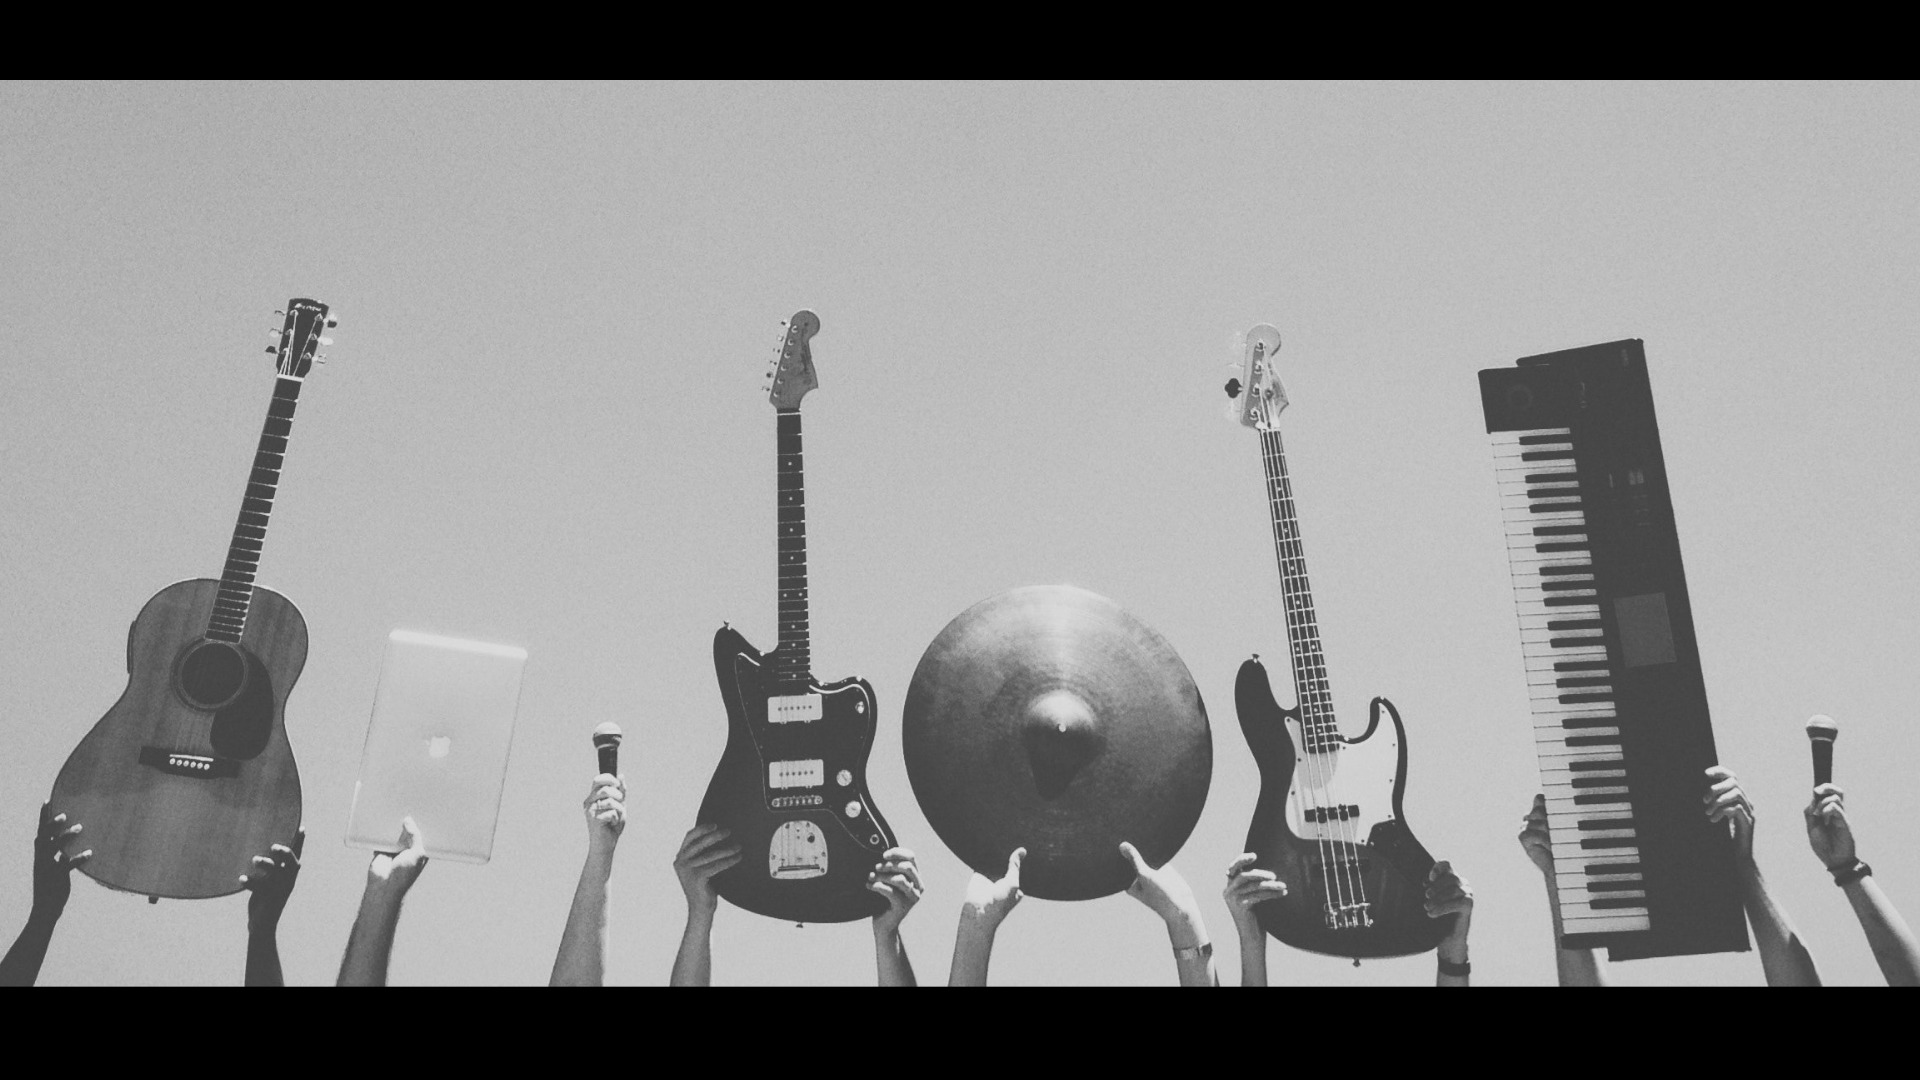 Fotografía en blanco y negro de manos alzando instrumentos.